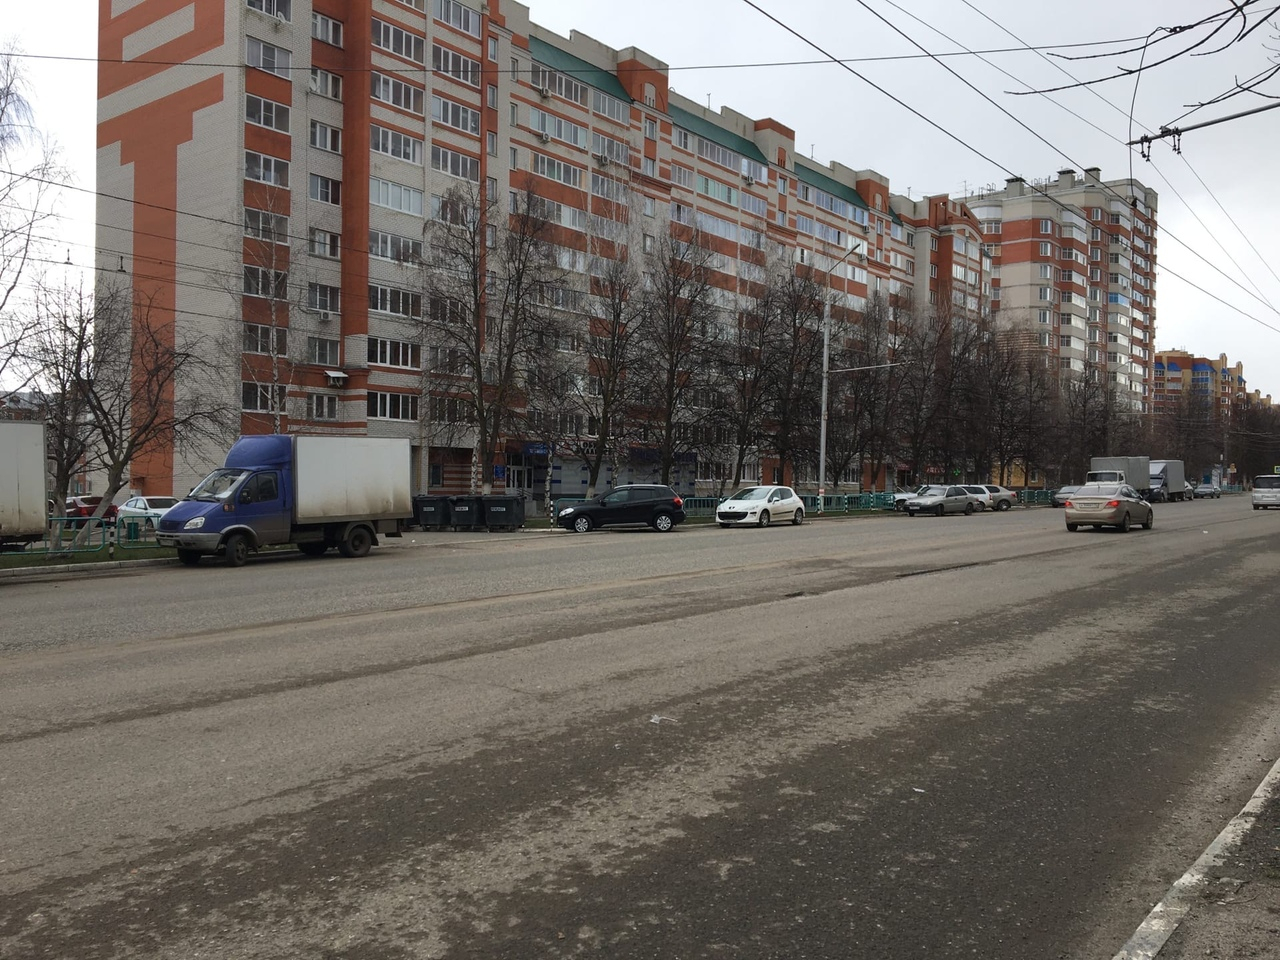 Саранск вошел в число городов с высоким уровнем социальной напряженности